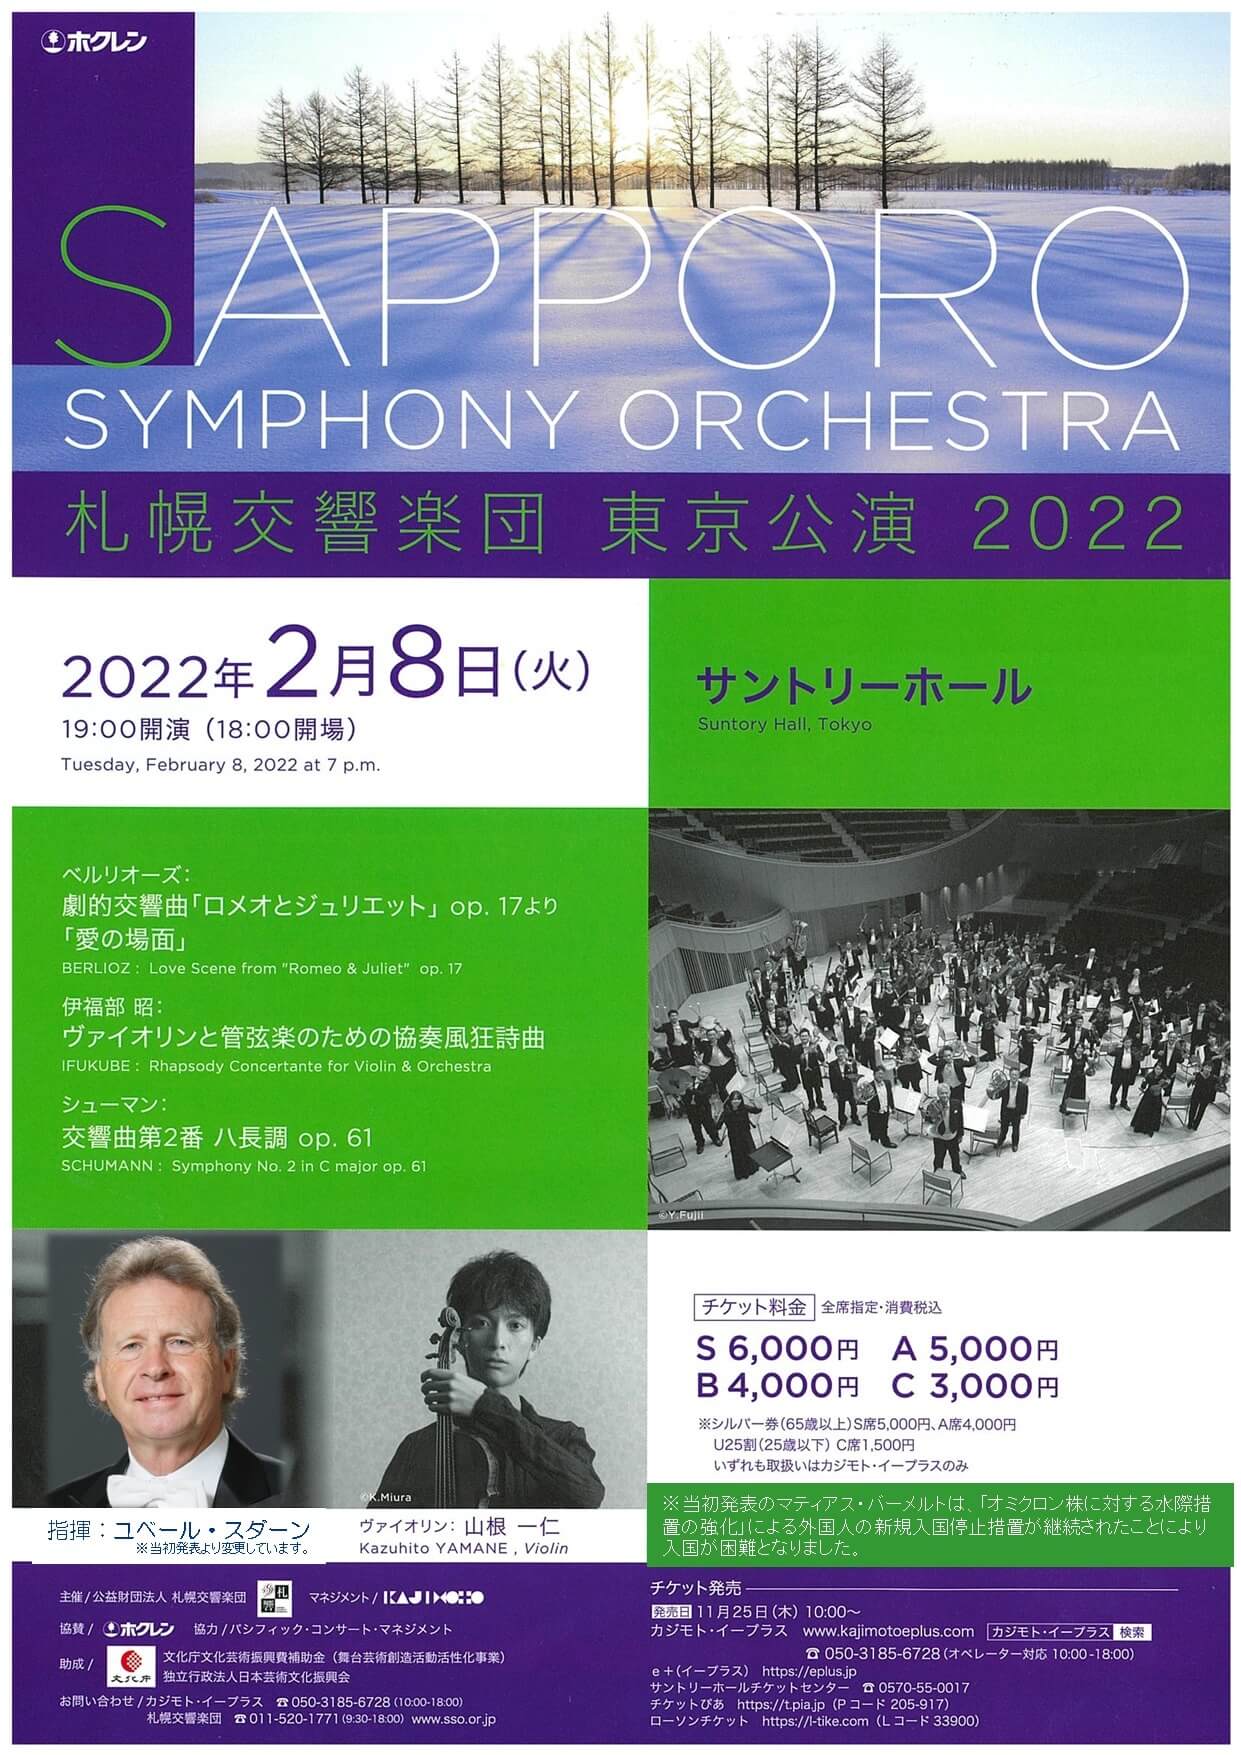 札幌交響楽団 東京公演2022